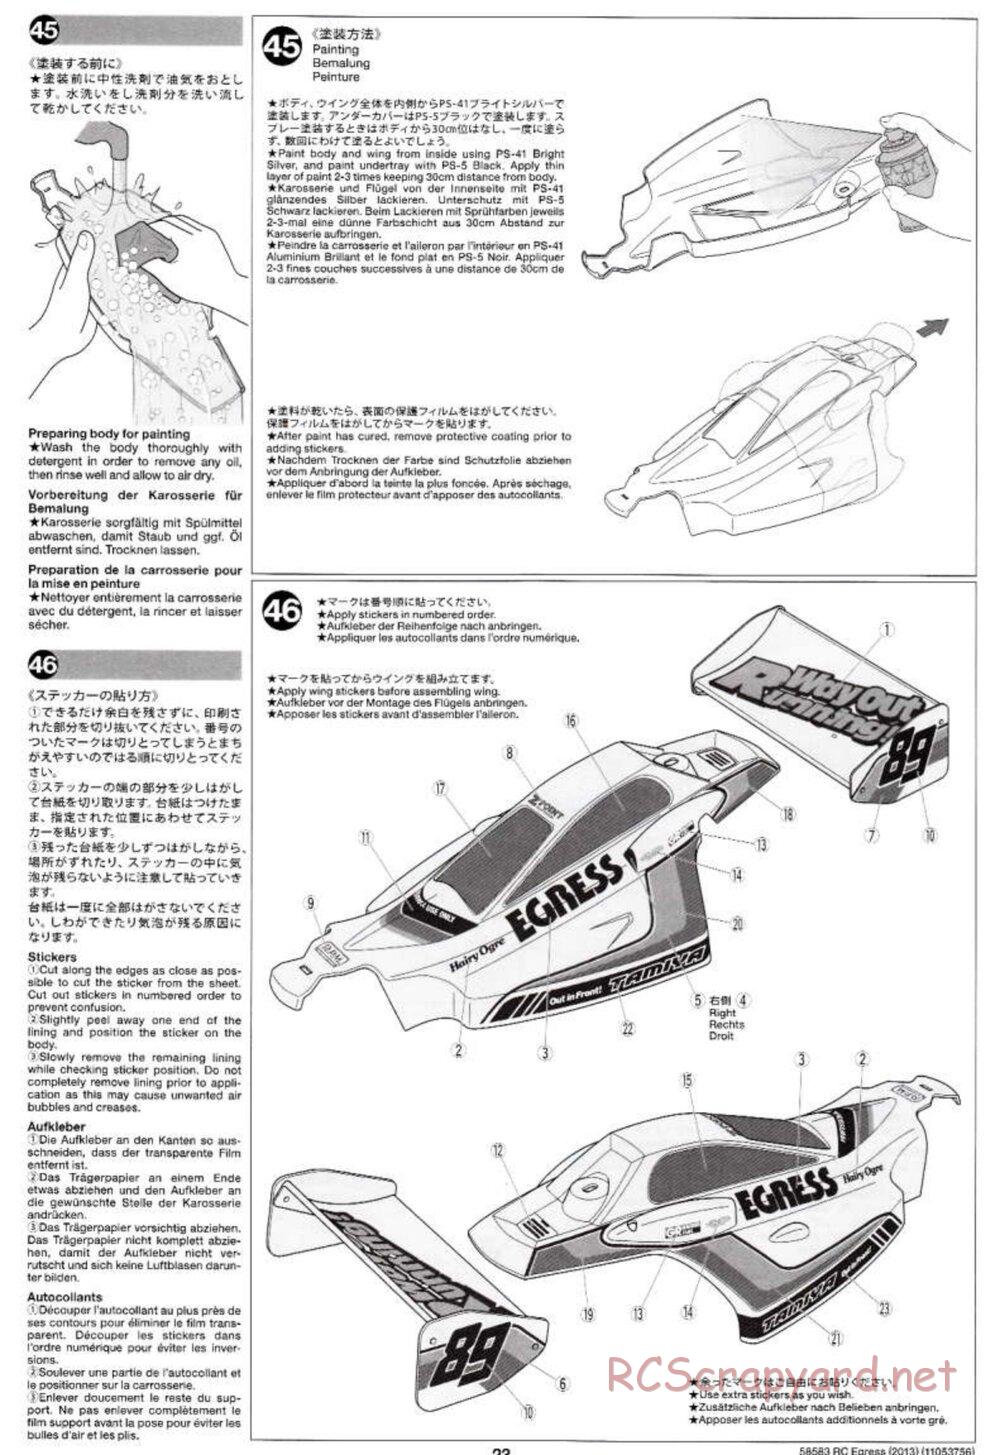 Tamiya - Egress 2013 - AV Chassis - Manual - Page 23